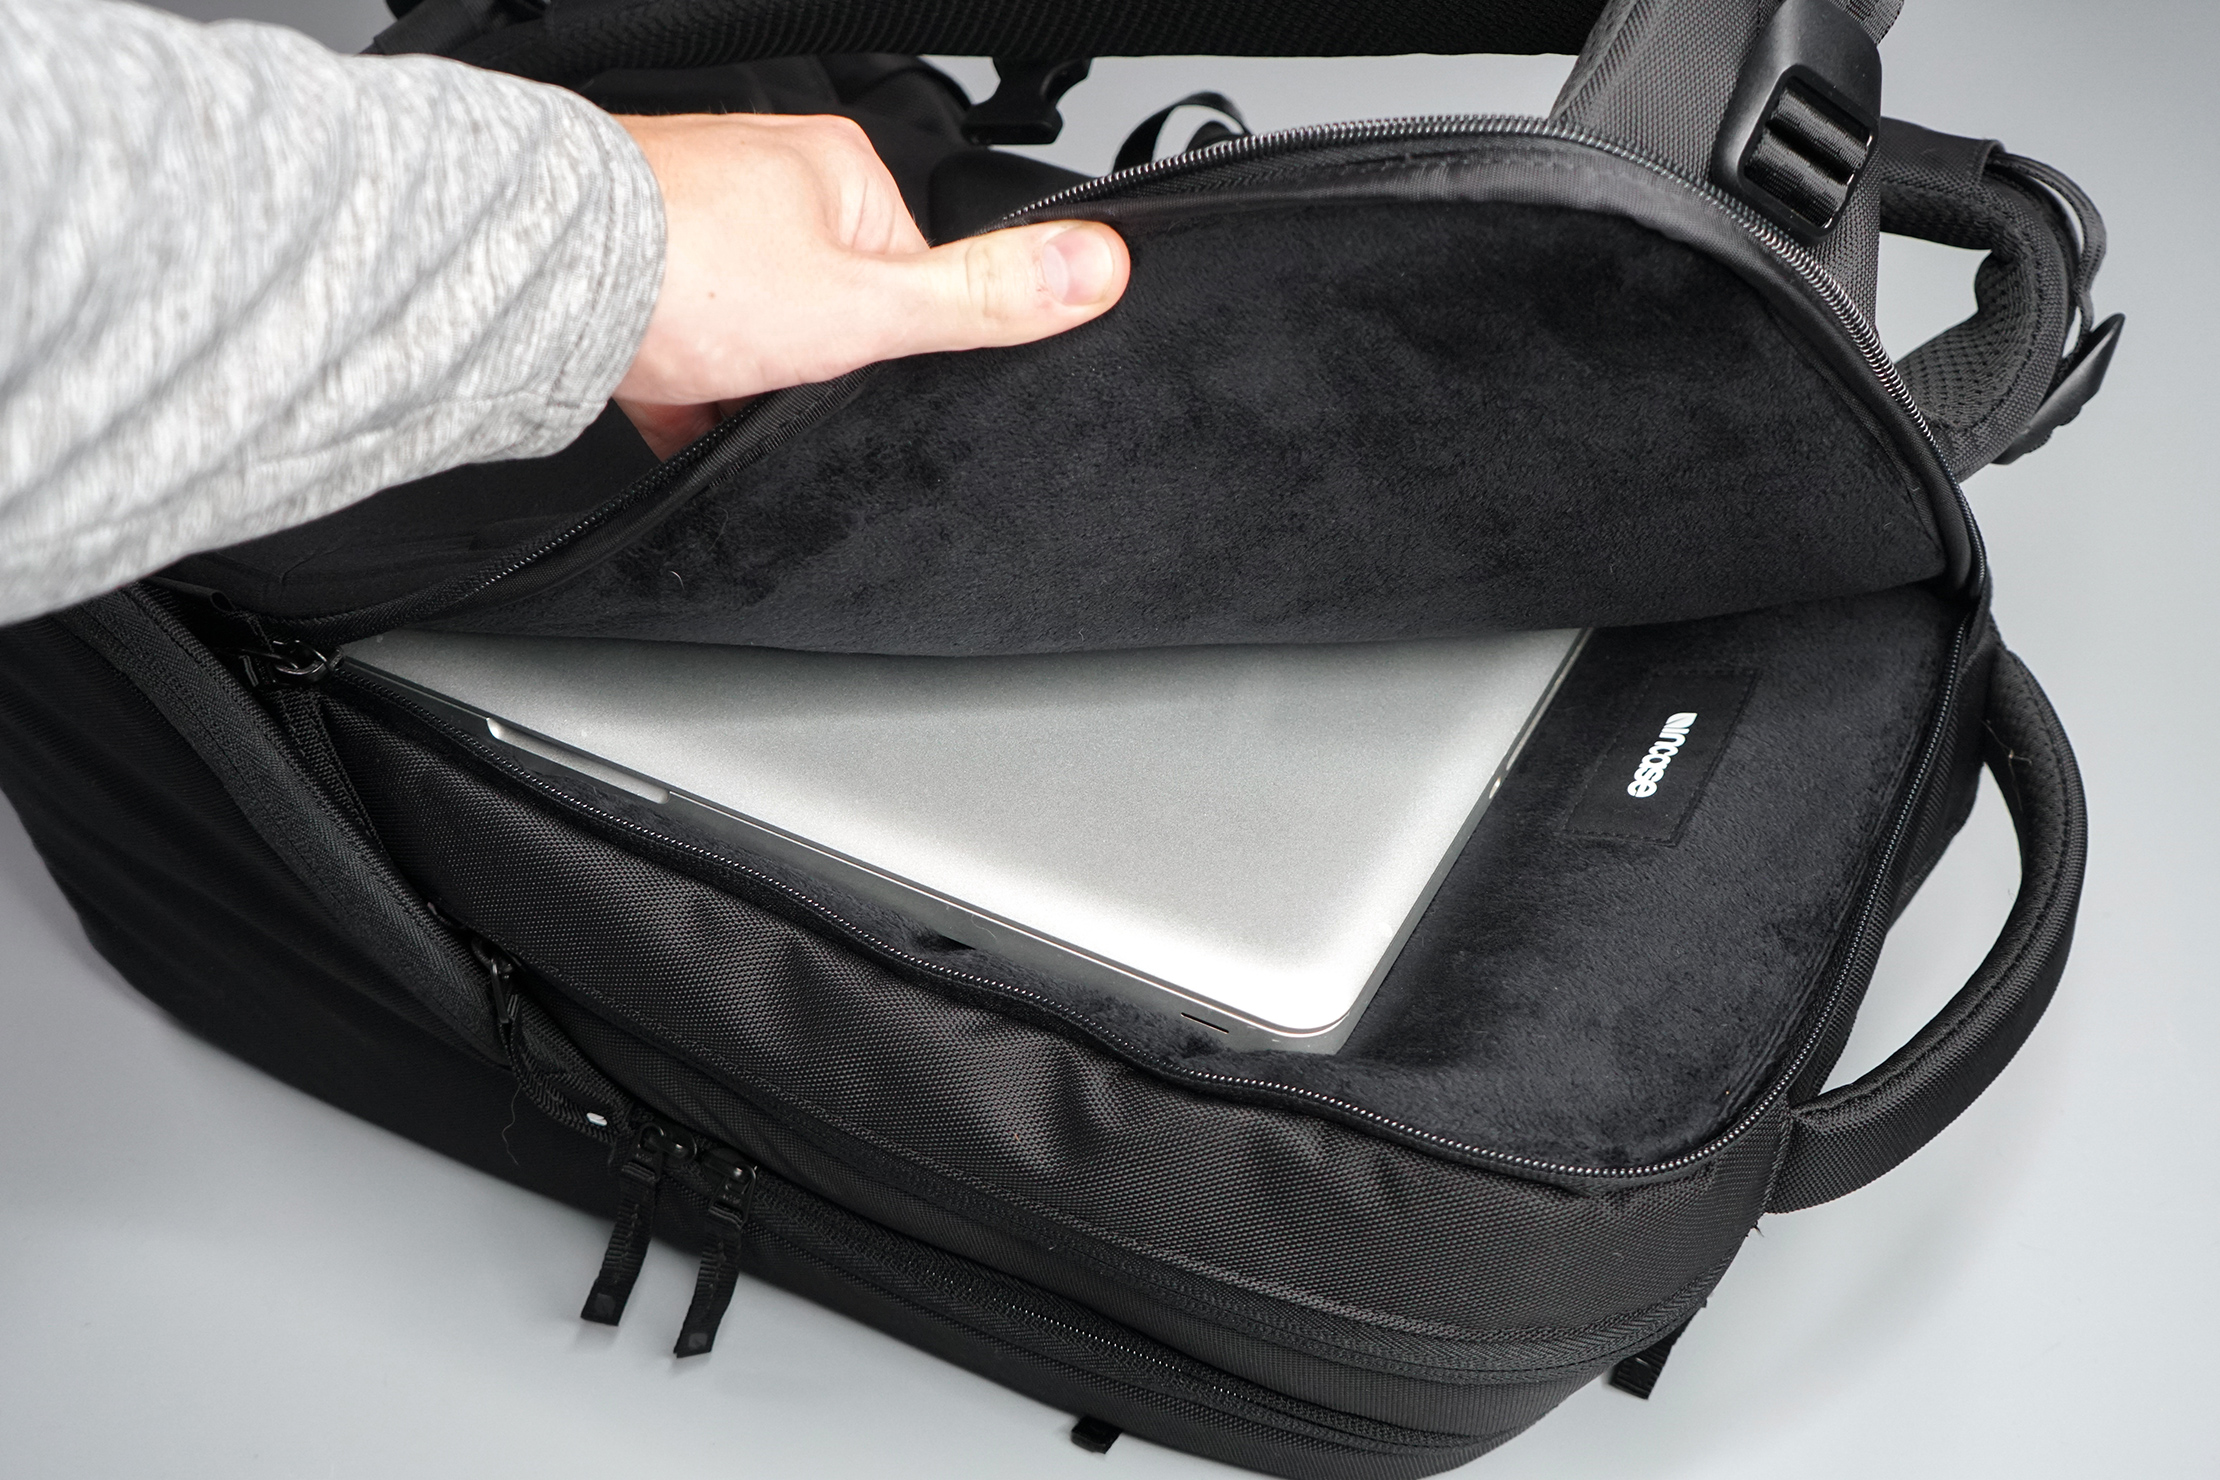 Business Travel Bag 15.6 inch Multi-Function Laptop Bag Shoulder Shockproof Laptop Bag My Hero Academia Laptop Bag